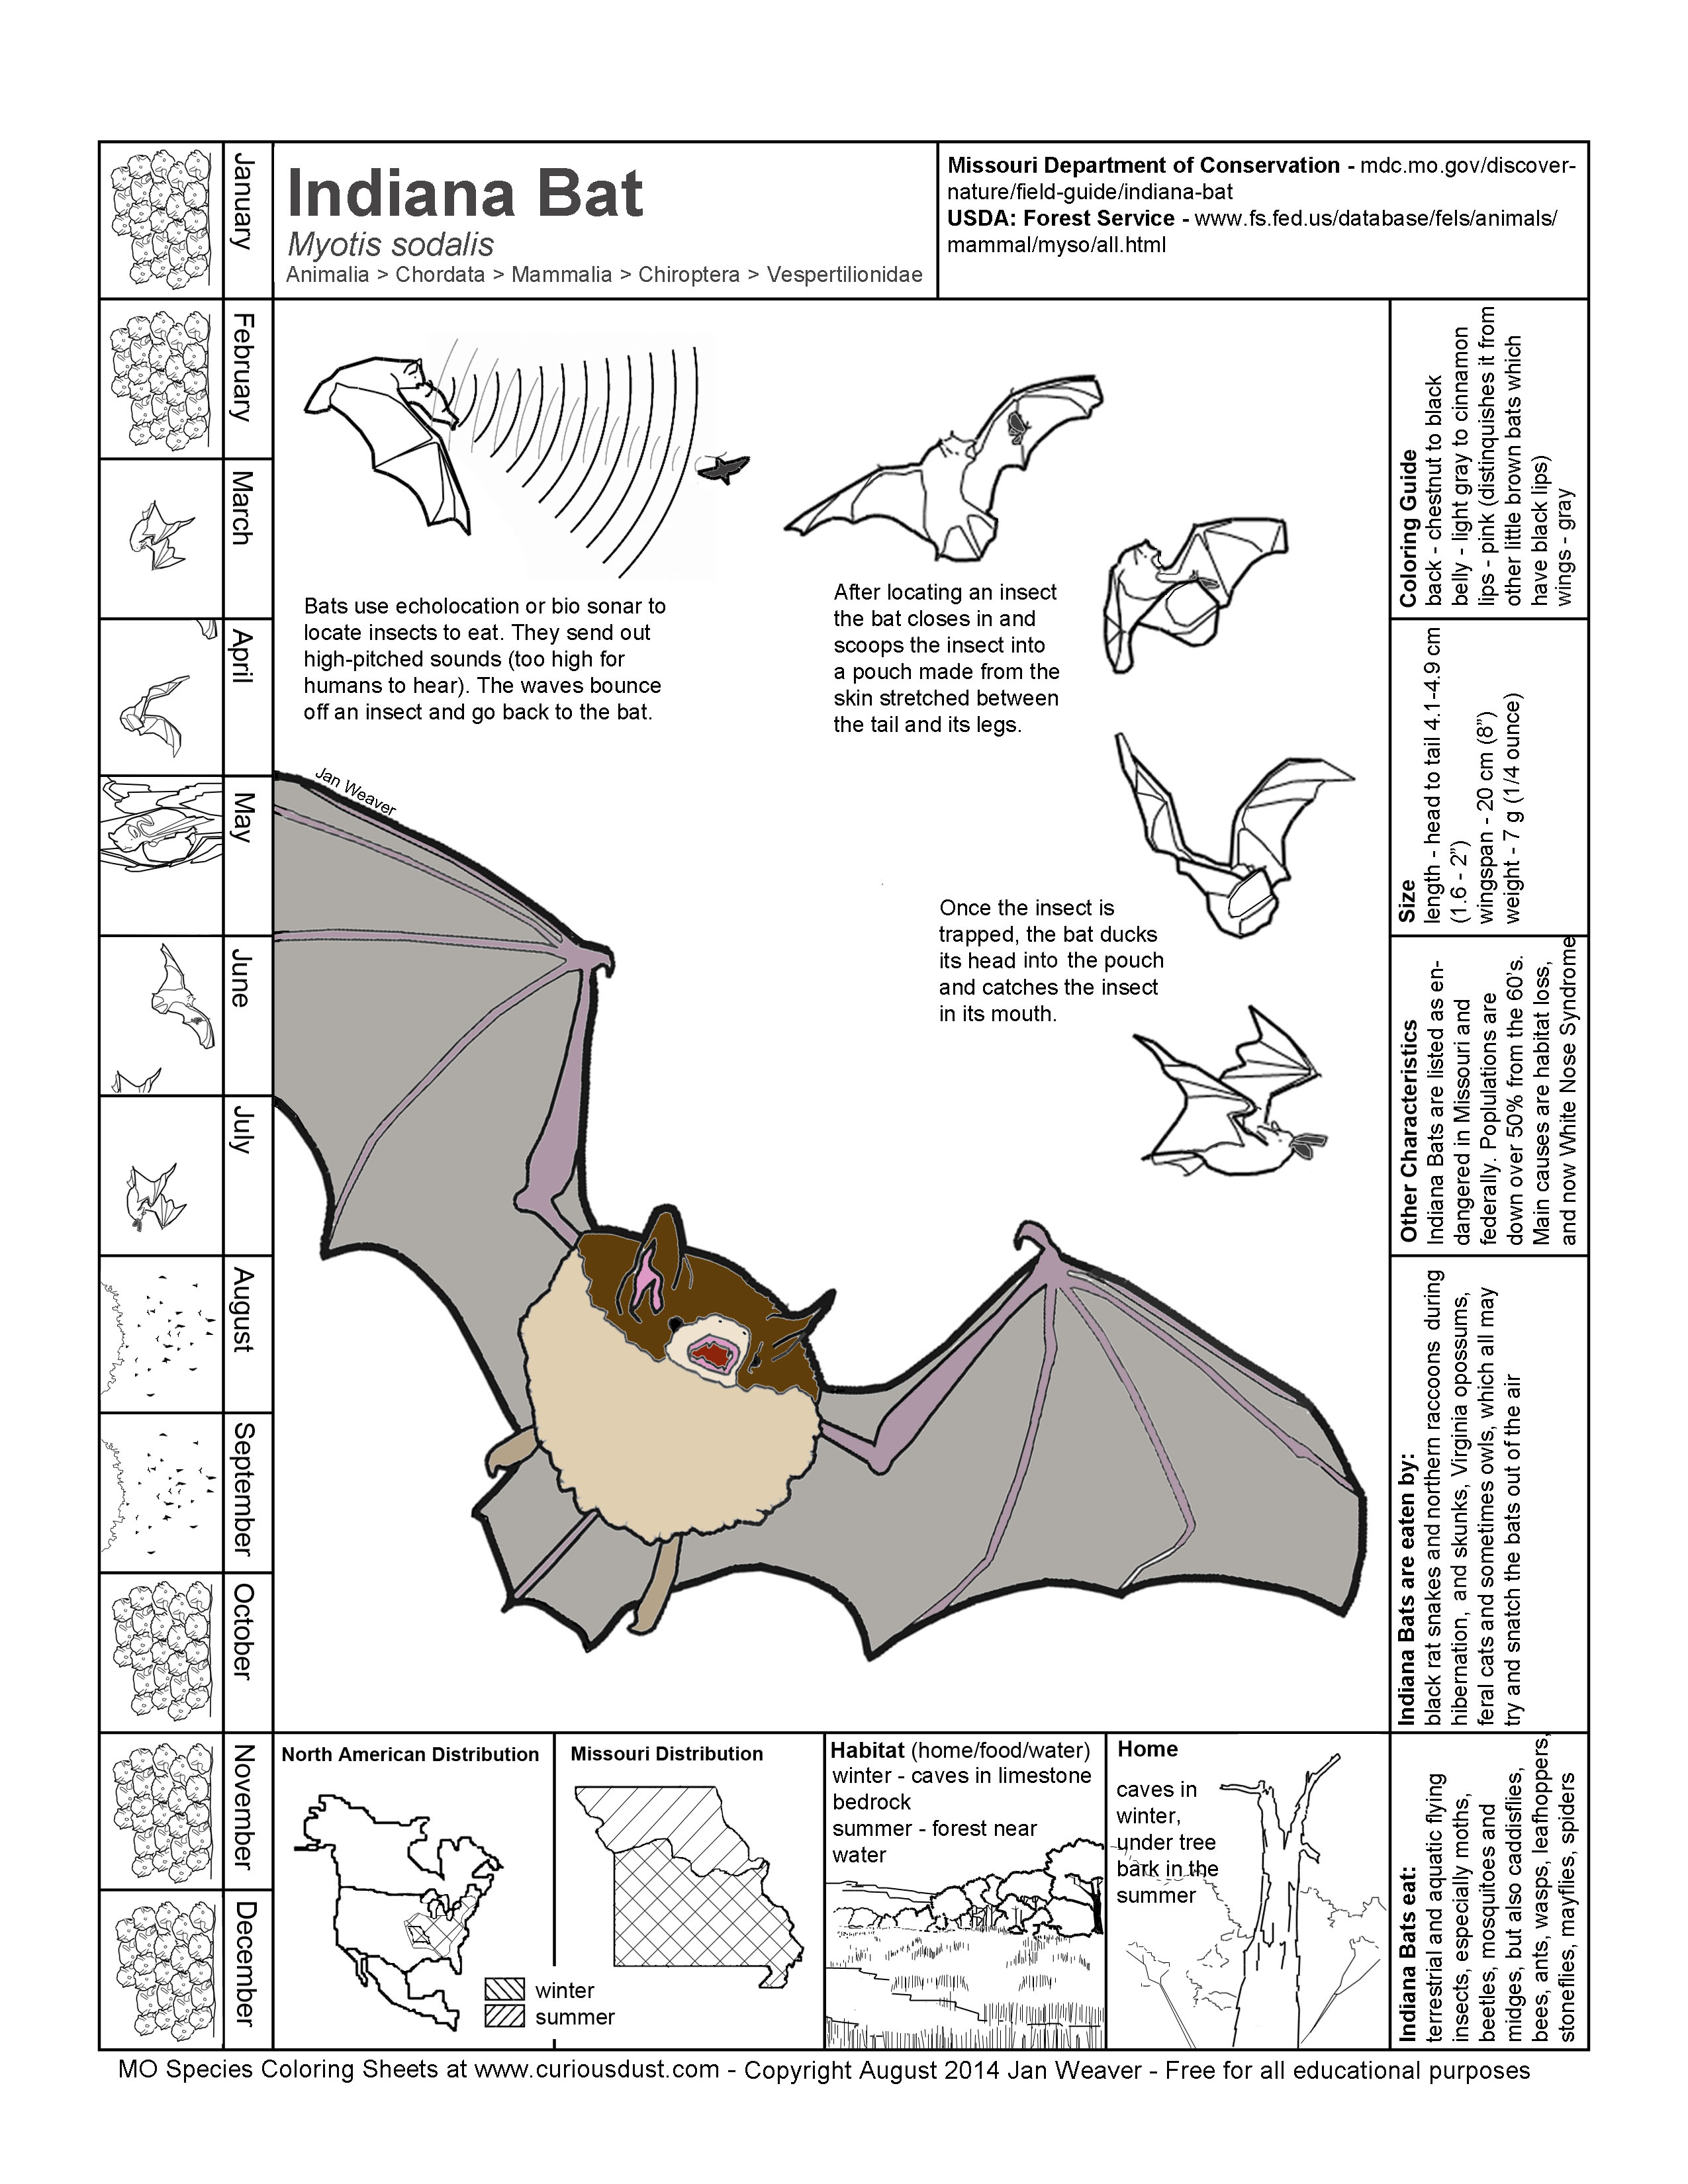 Indiana Bat Image